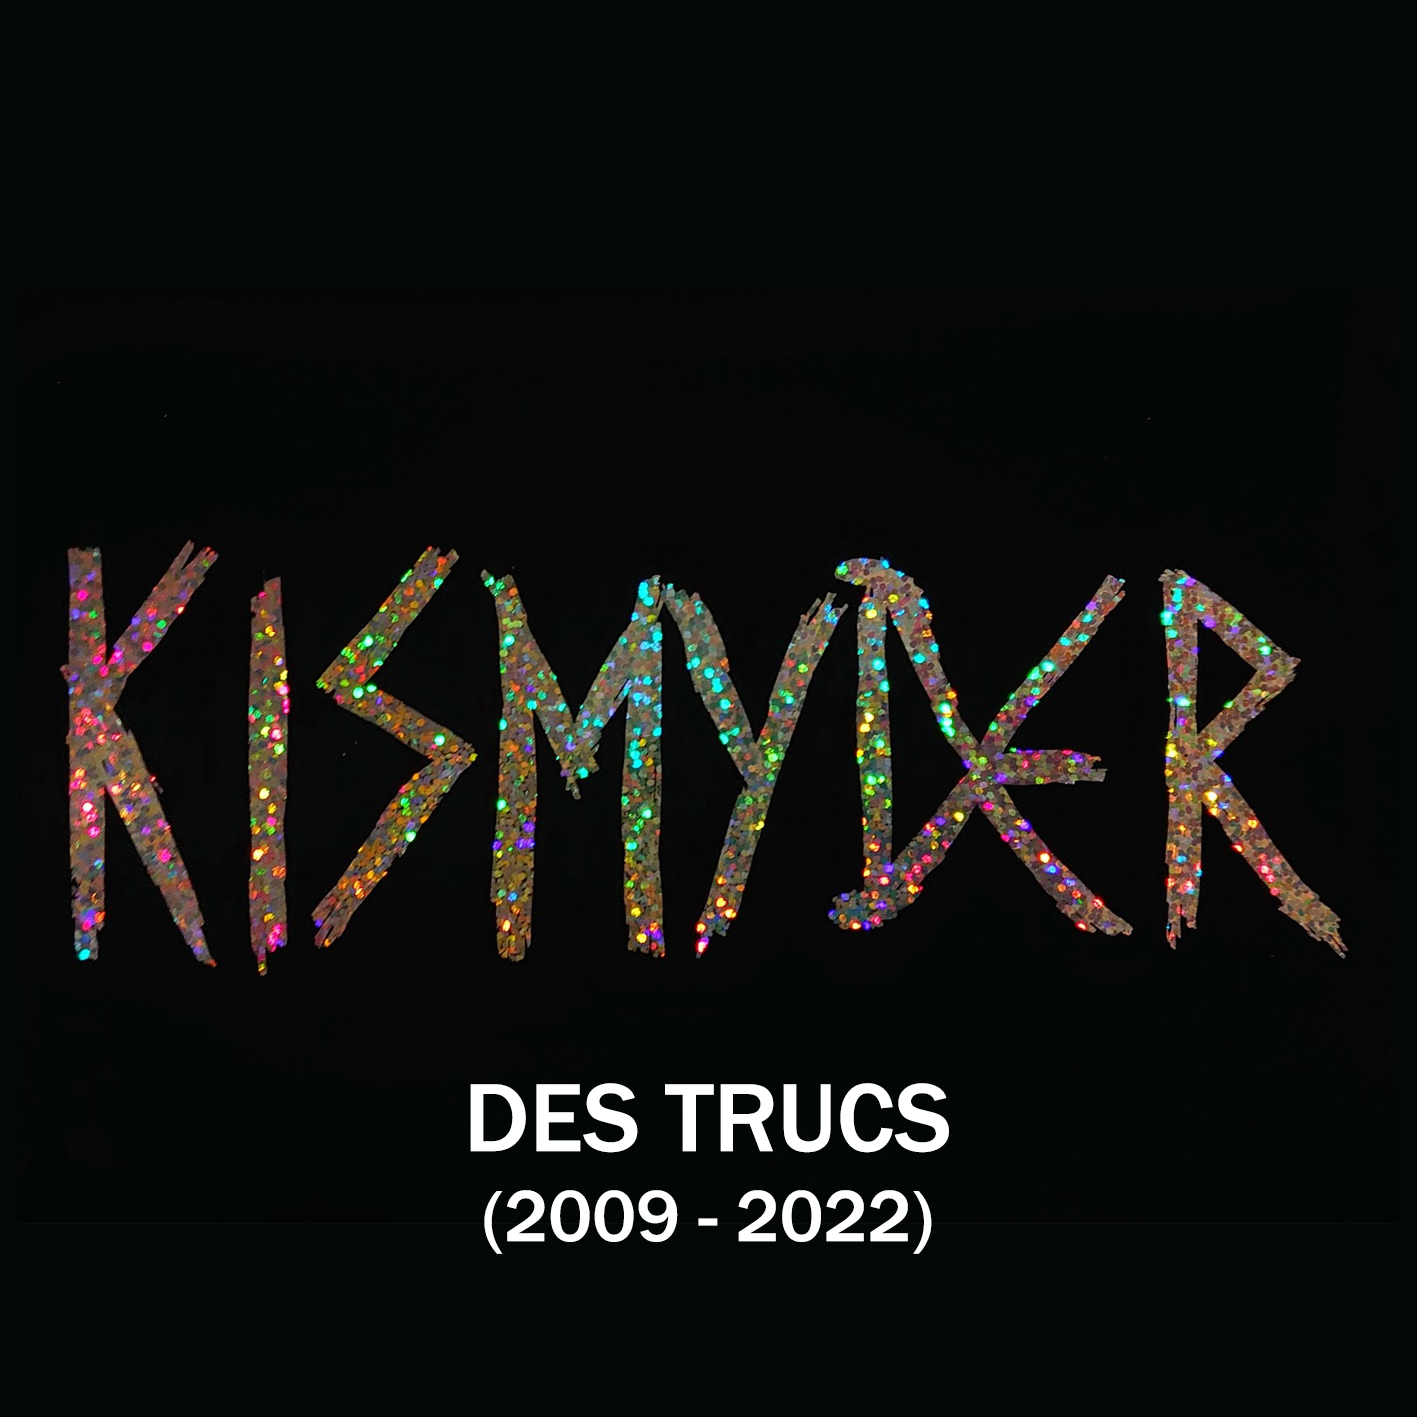 DES TRUCS (2009-2022)